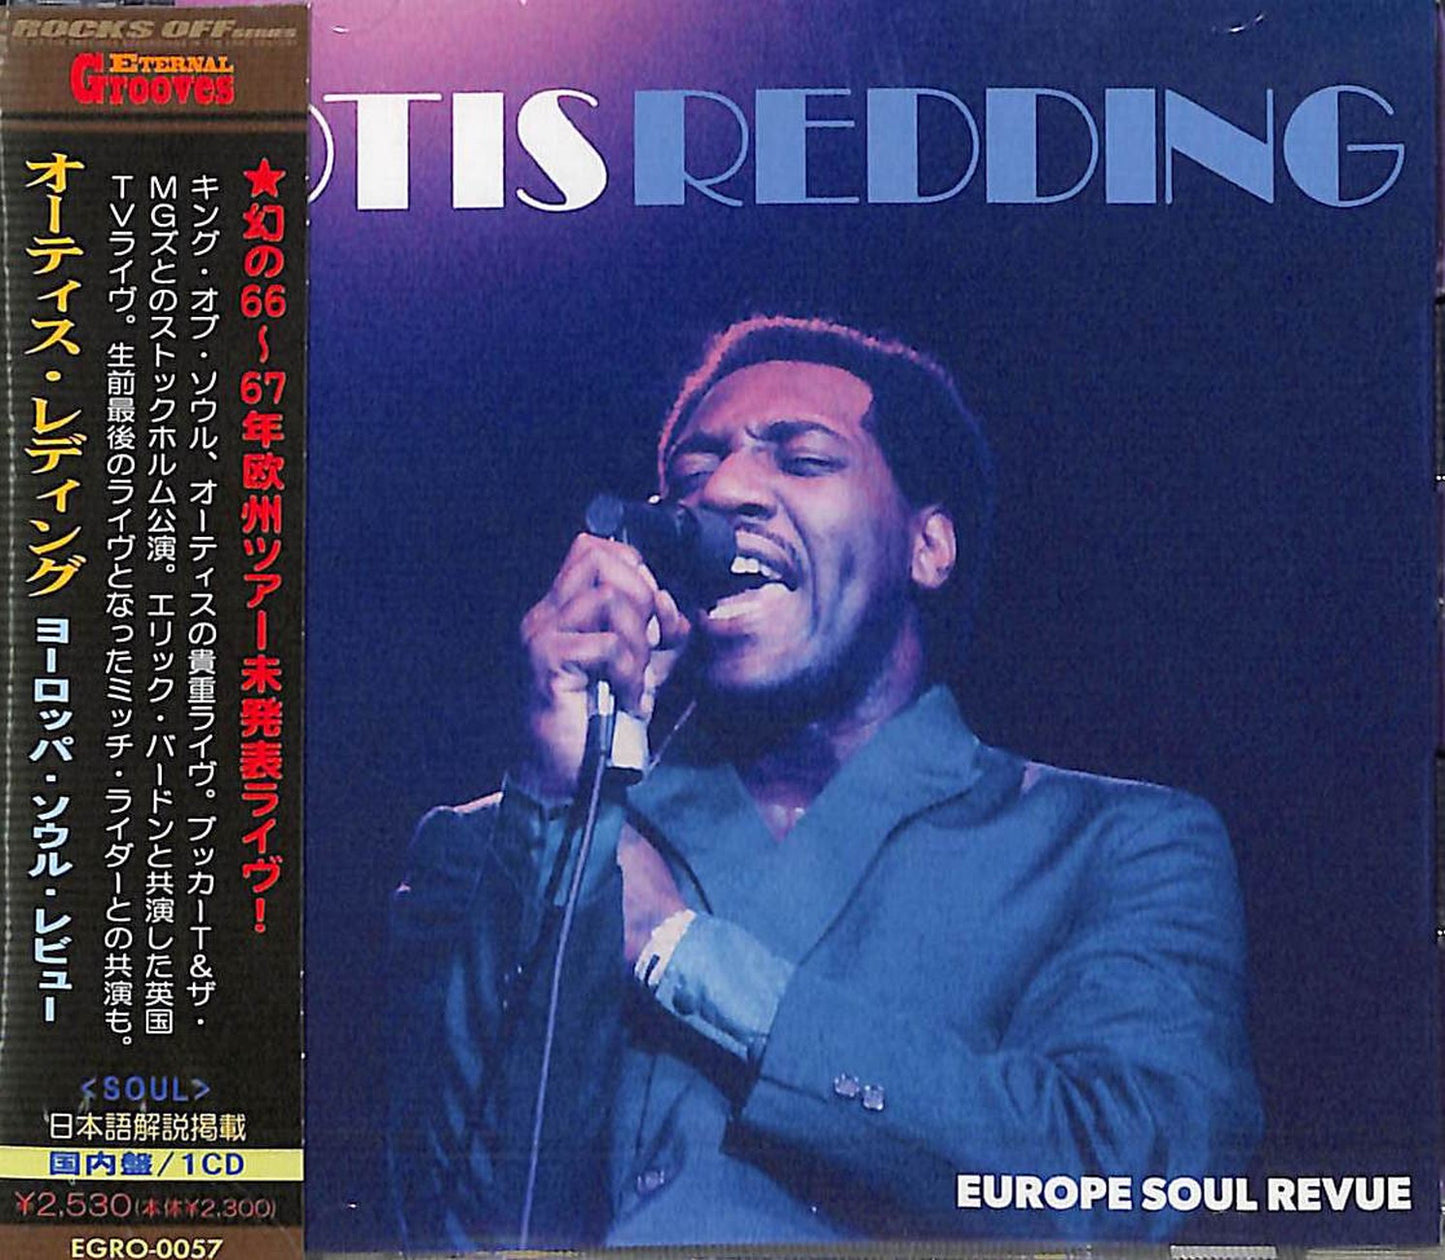 Otis Redding - Europe Soul Revue - Japan CD